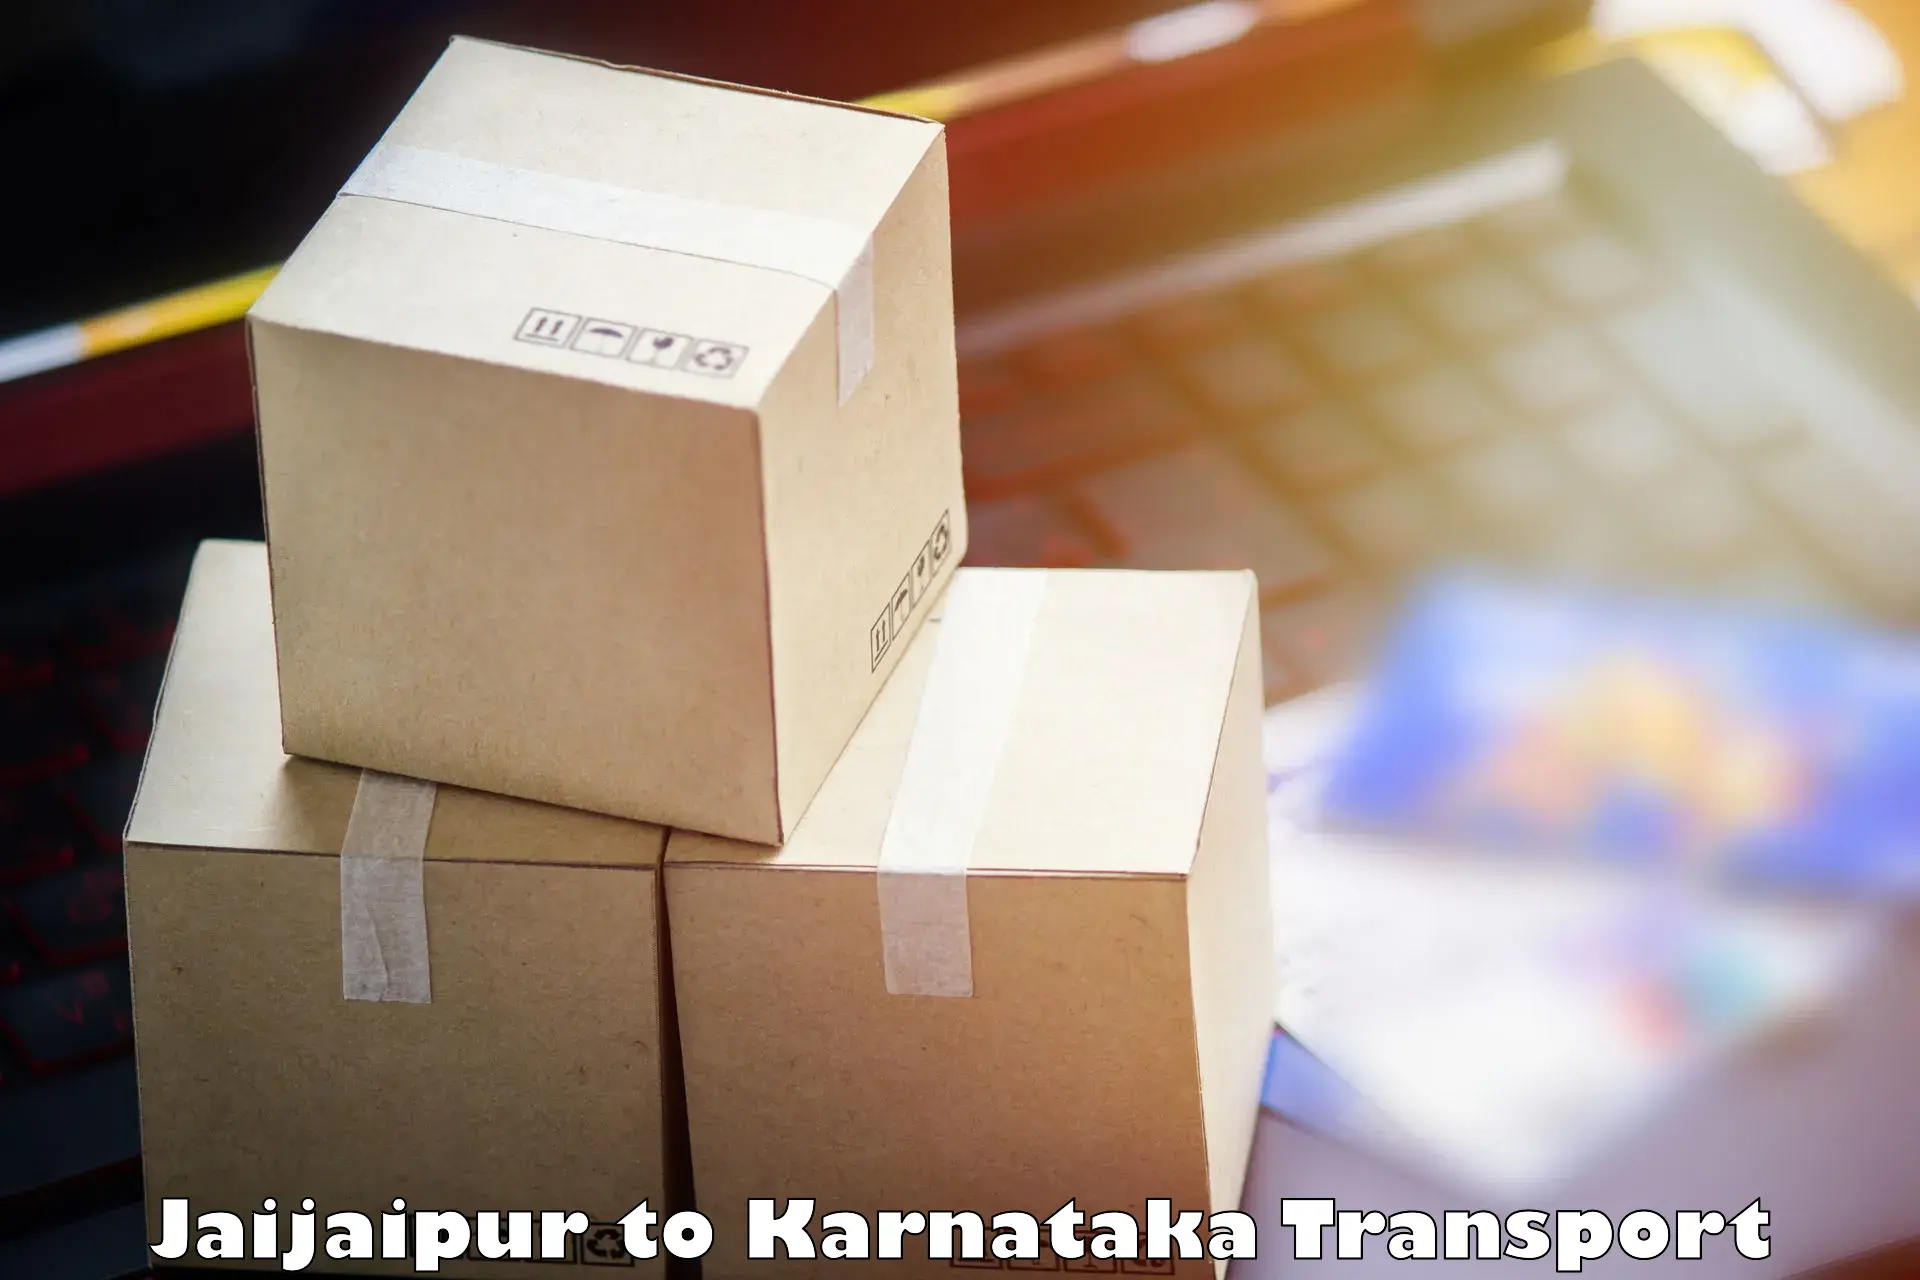 Online transport Jaijaipur to Karnataka